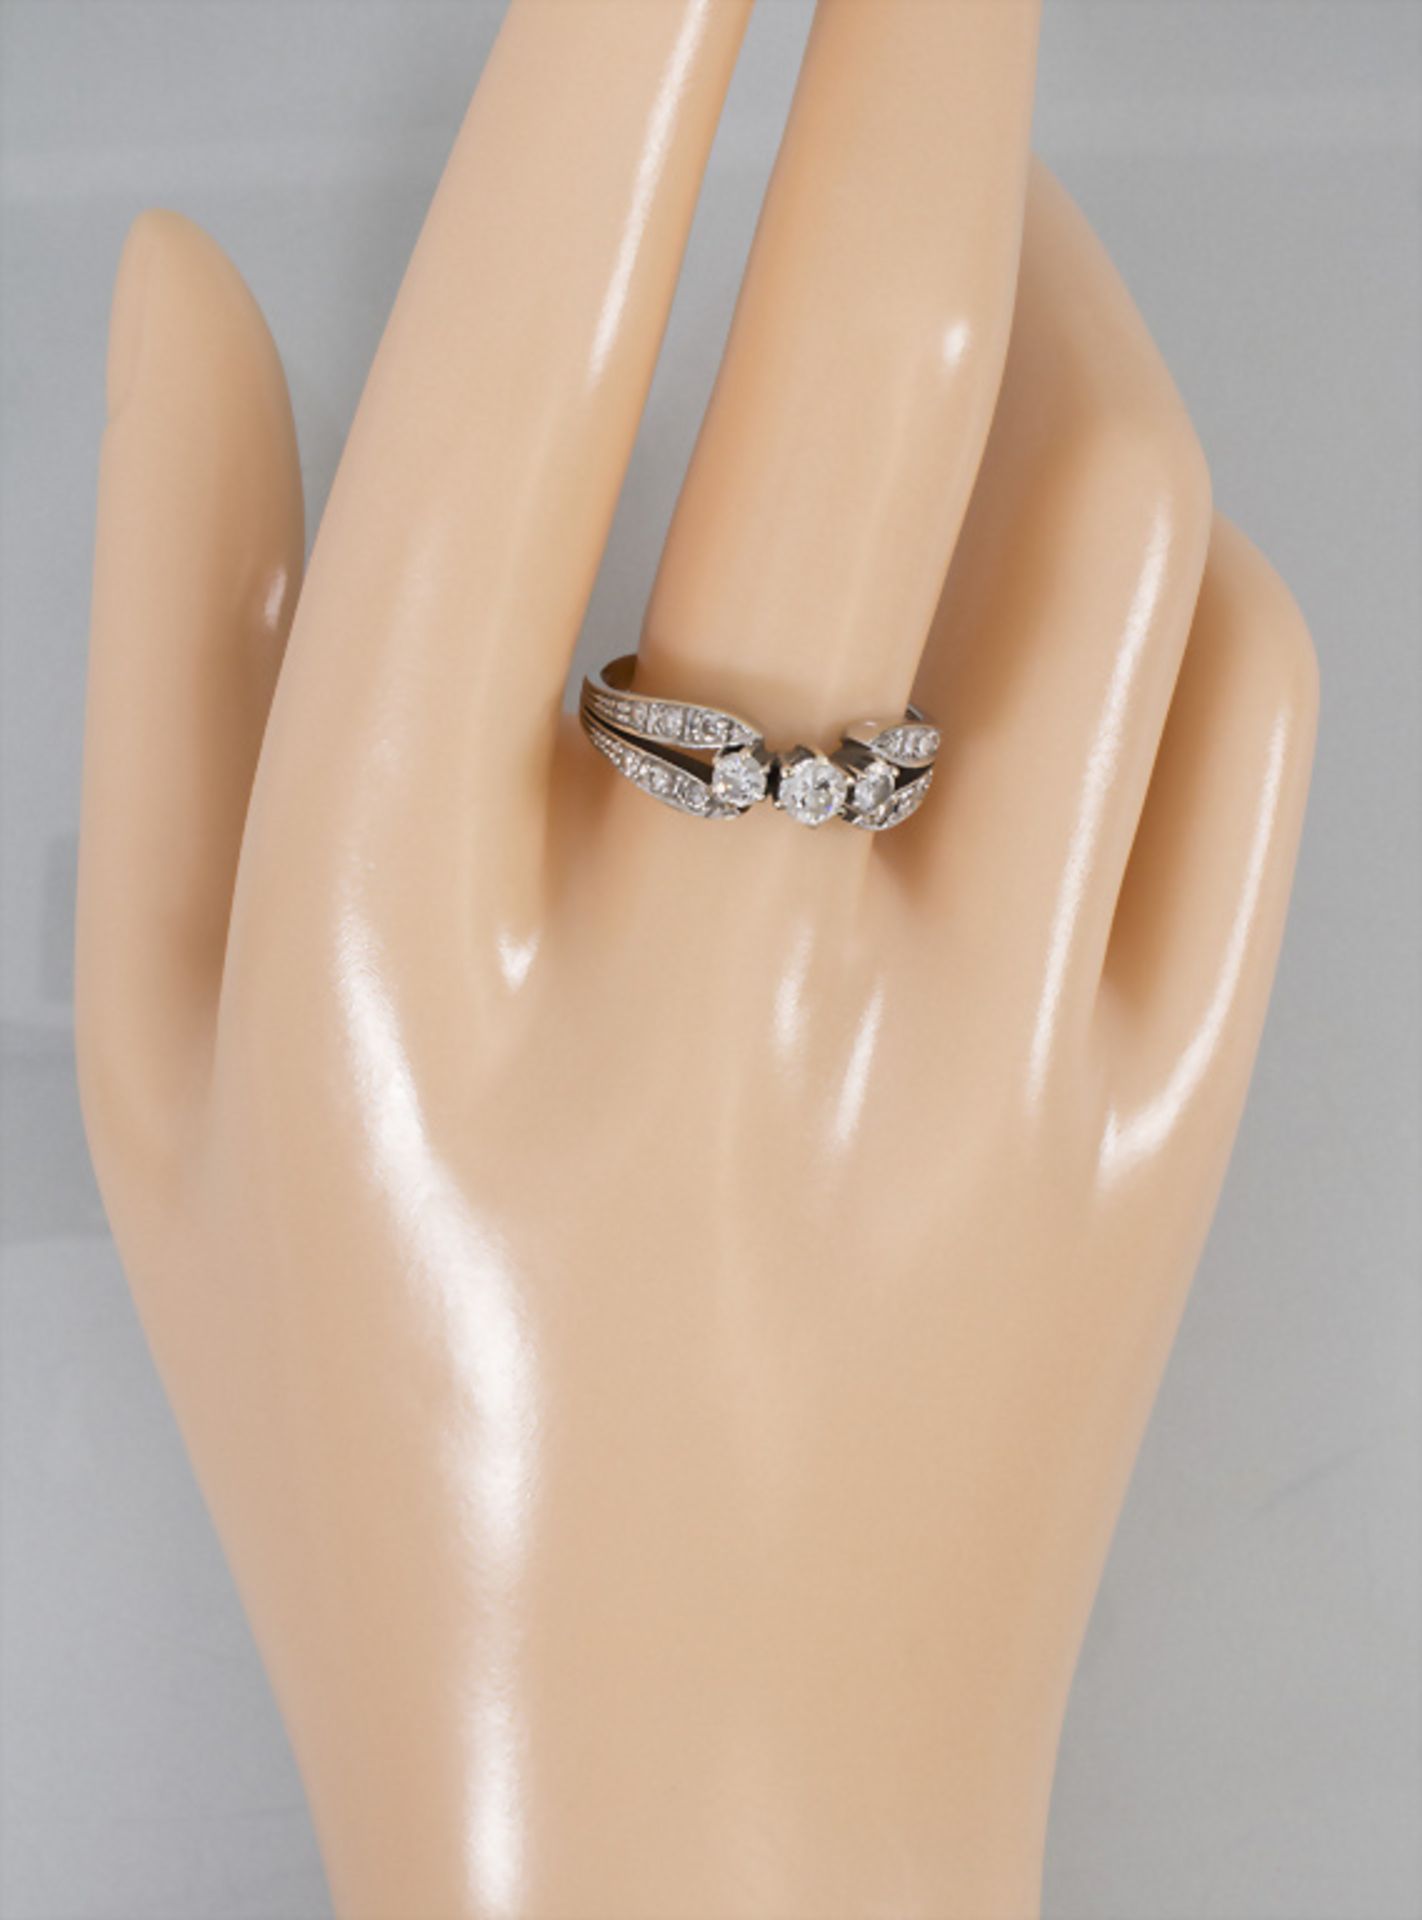 Art Déco Damenring in Weißgold mit Diamanten / An Art Deco ladies 18k gold ring with diamonds - Bild 4 aus 4